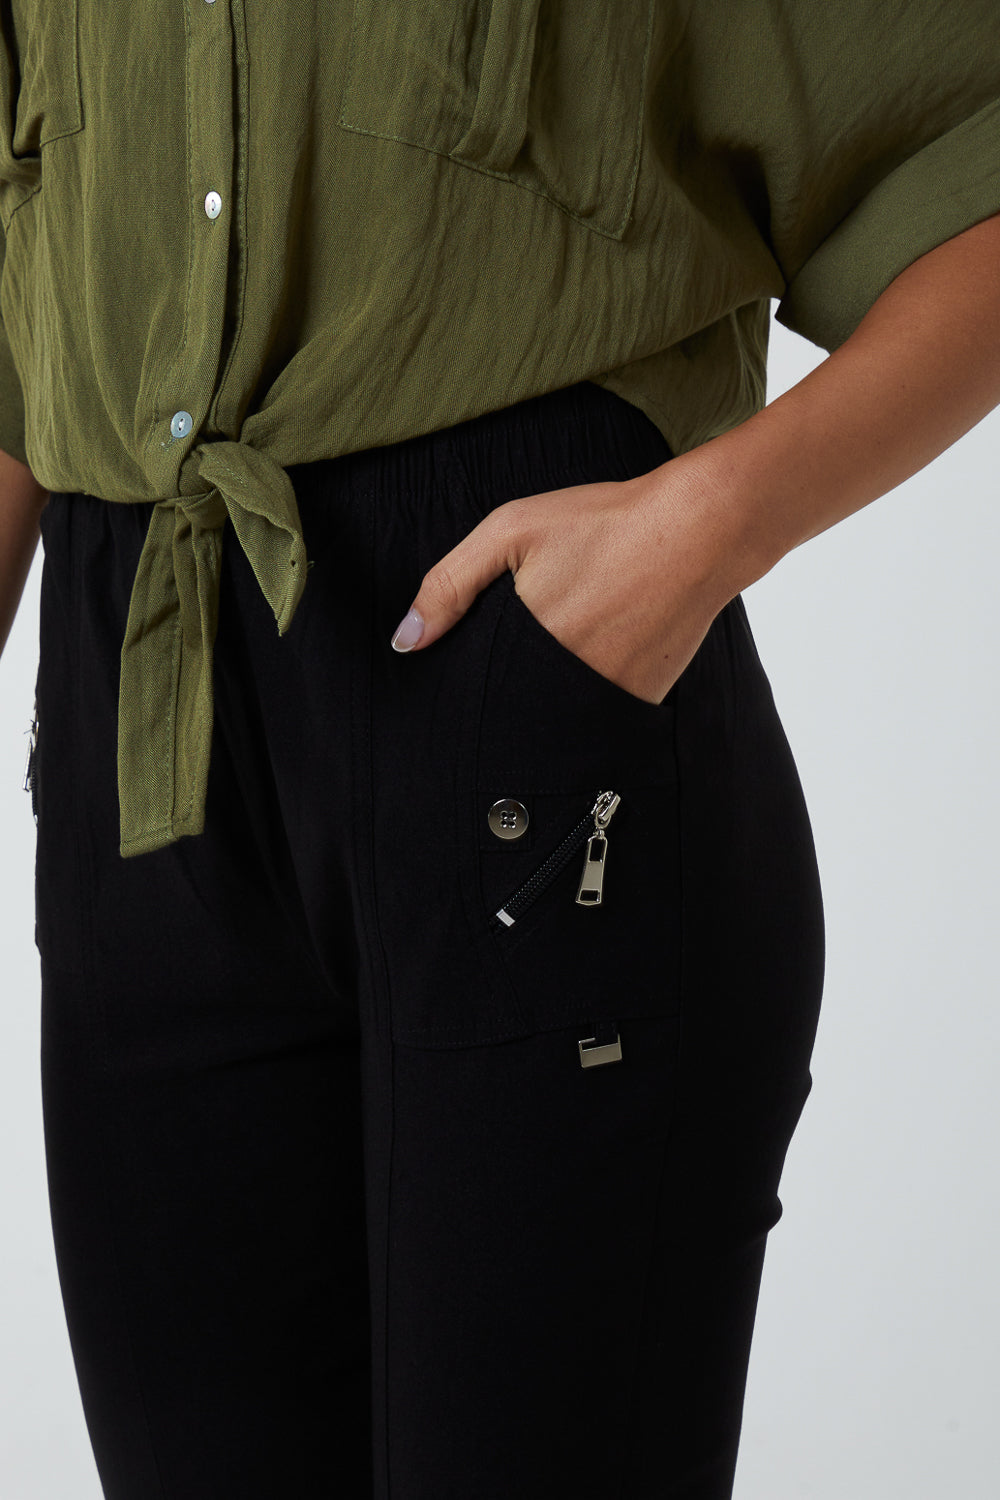 Elasticated Waist Zip Detail Crop Trouser